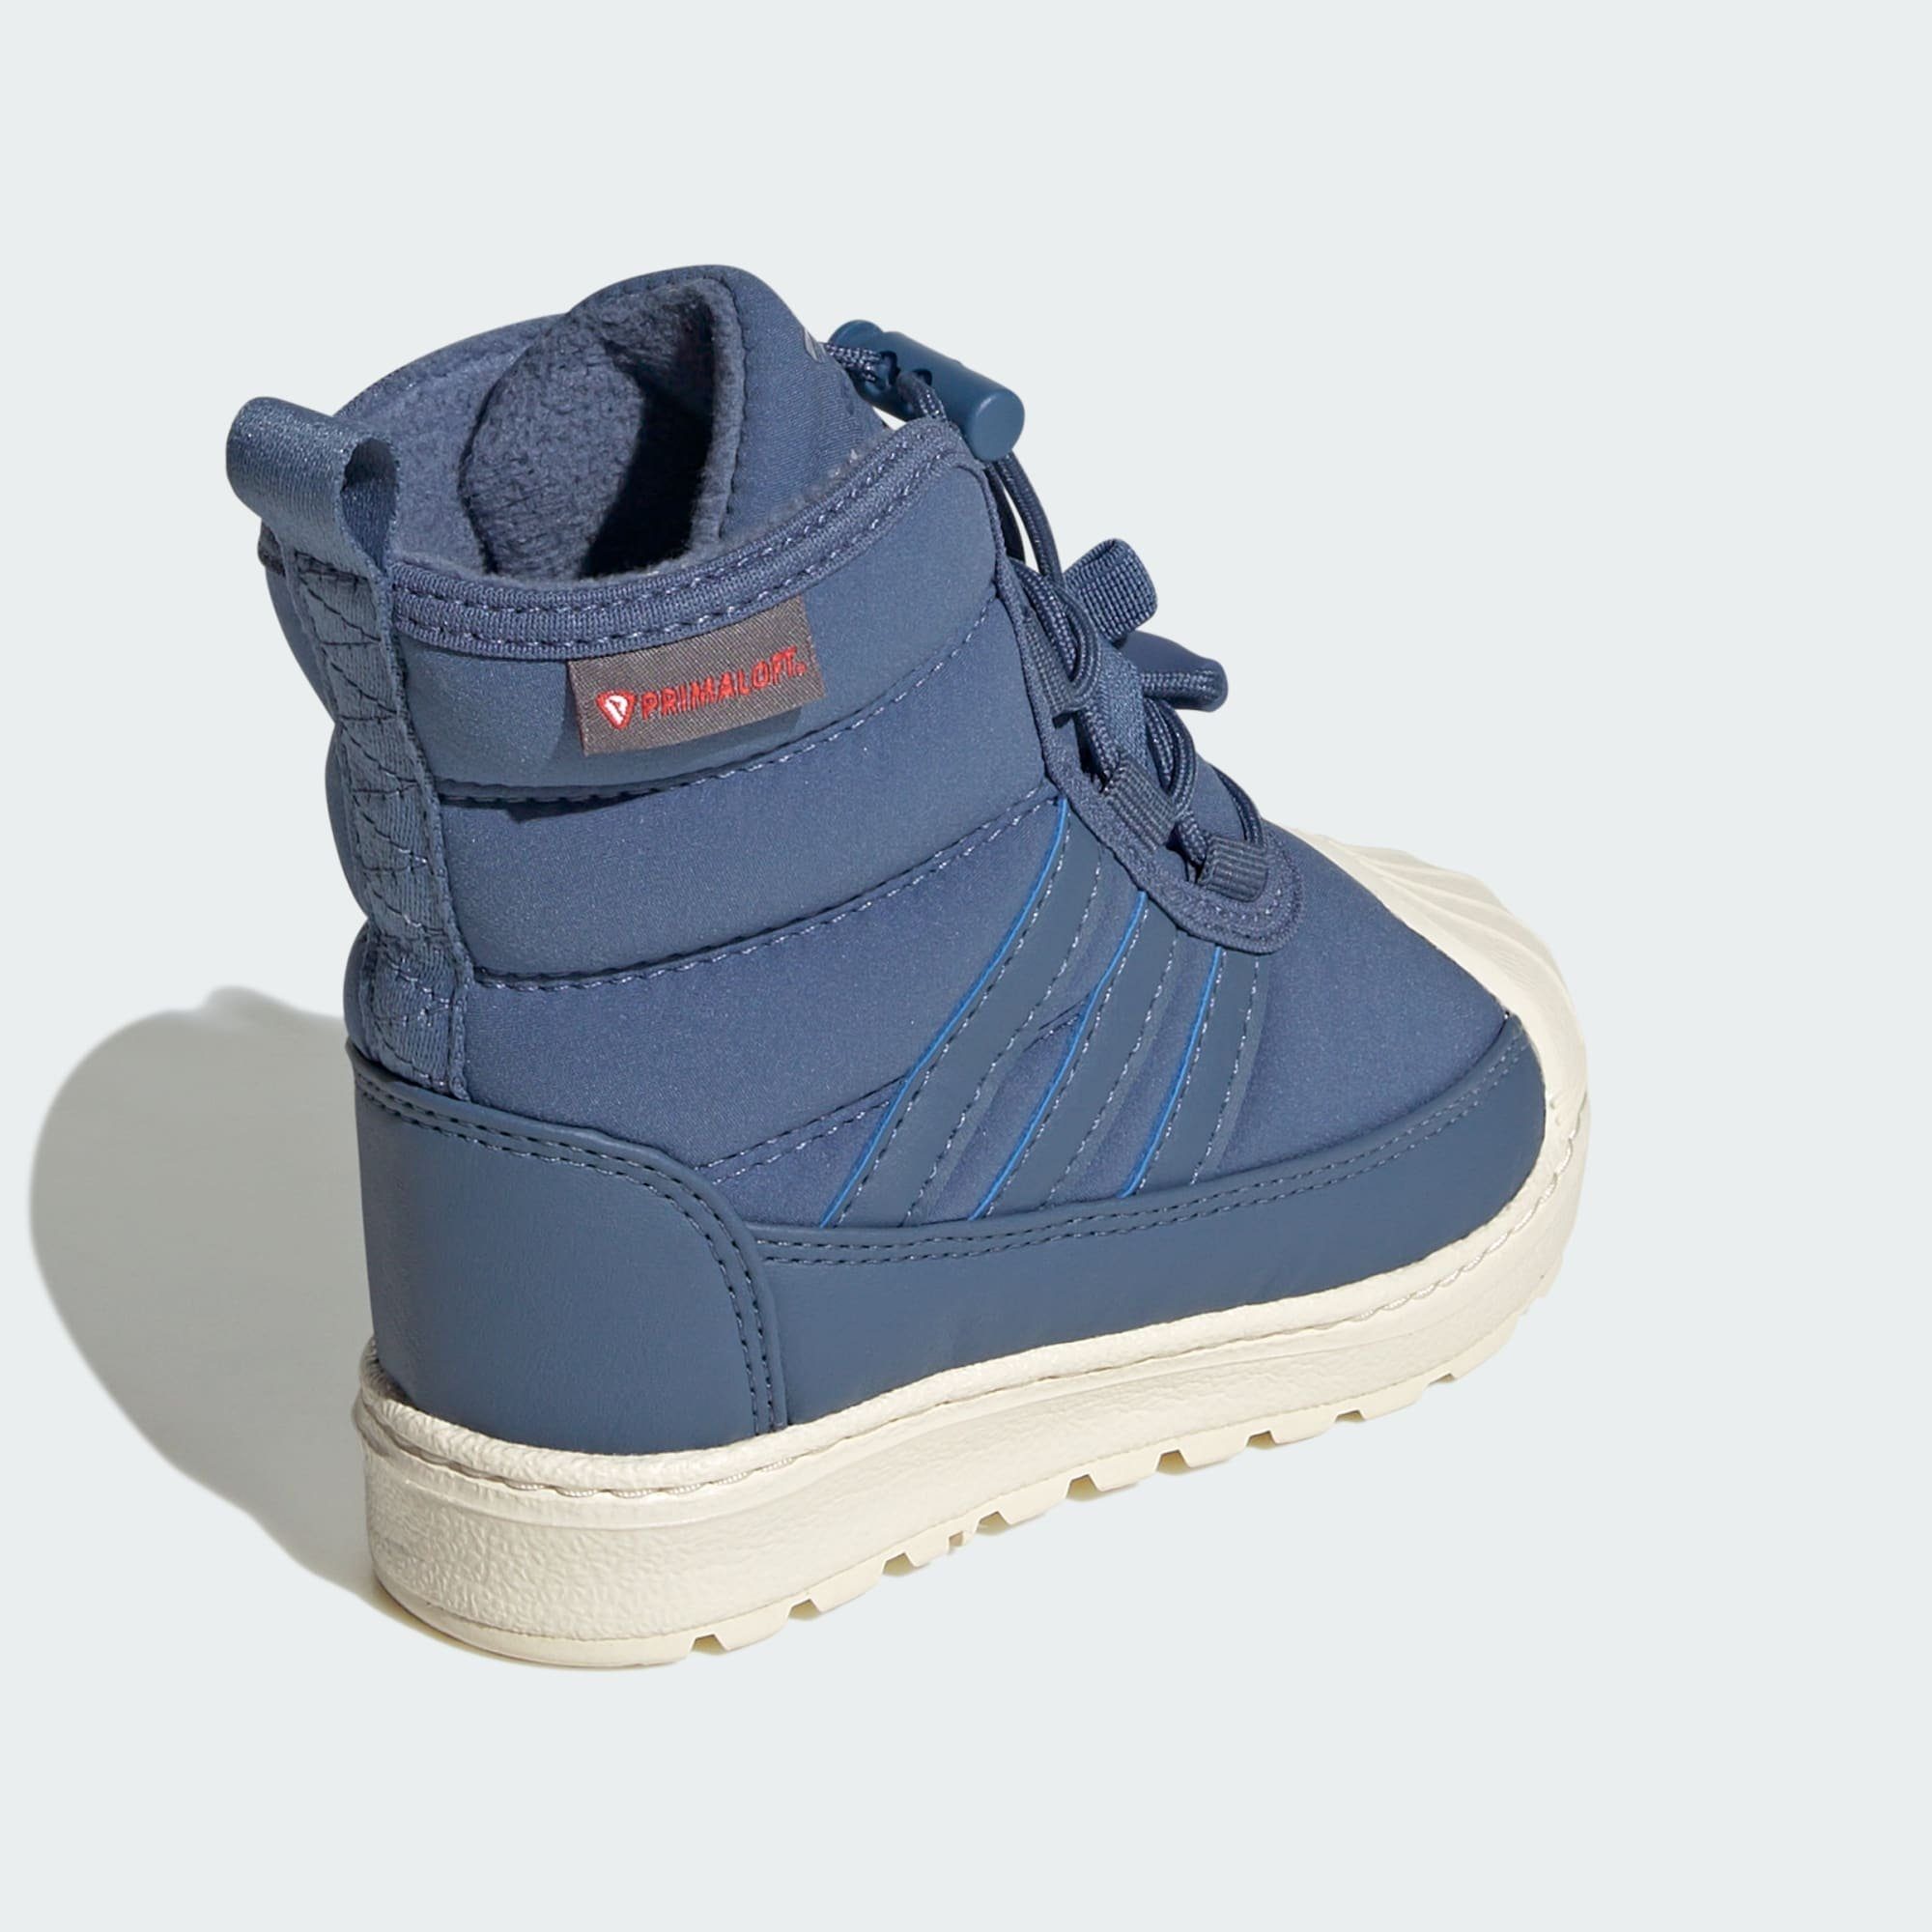 Crew / Sneaker 360 White Blue Blue / KIDS STIEFEL SUPERSTAR Crew adidas Wonder Originals